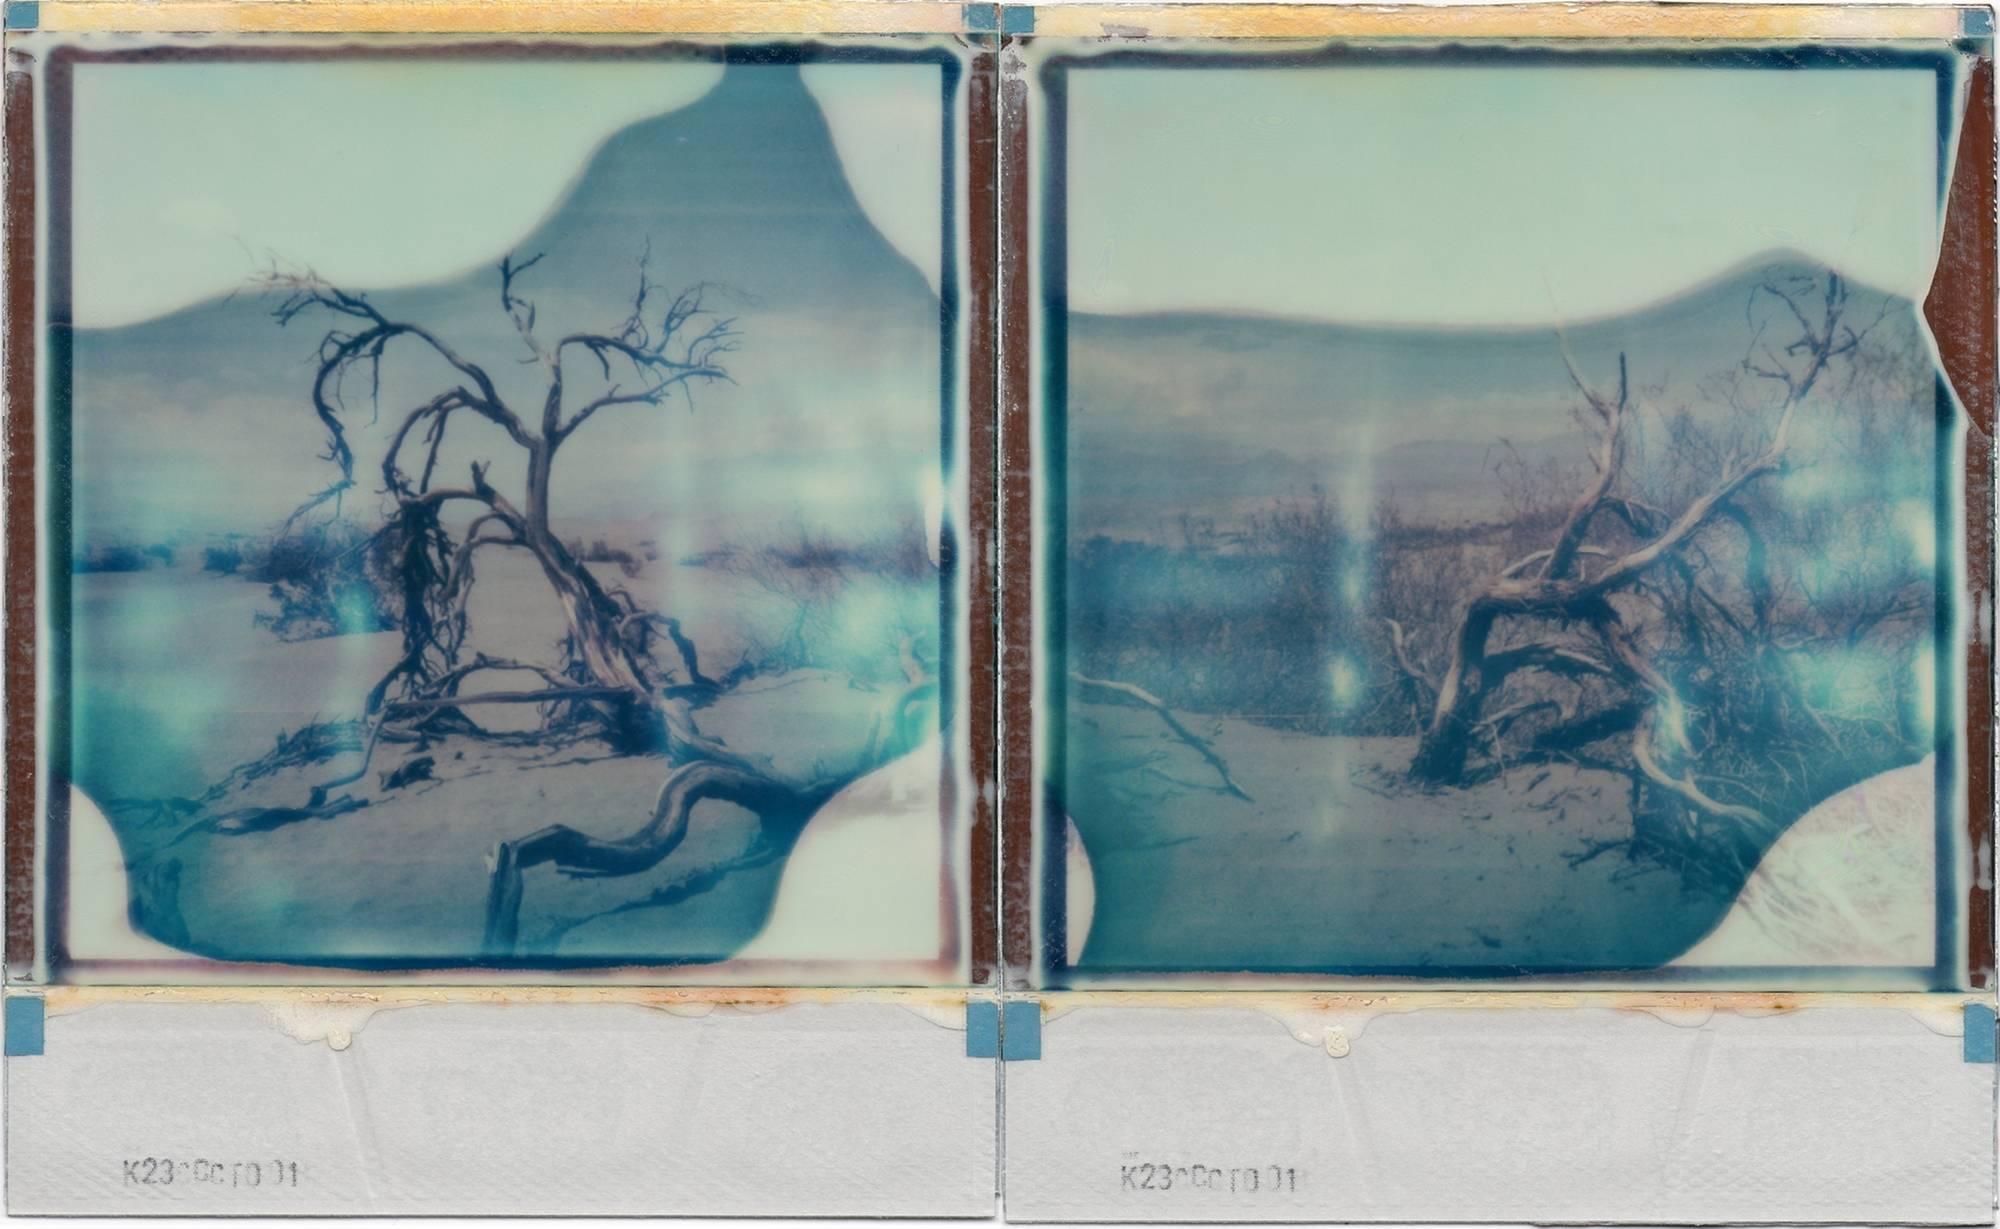 Julia Beyer Landscape Photograph - Desert Dream - based on 2 Polaroids